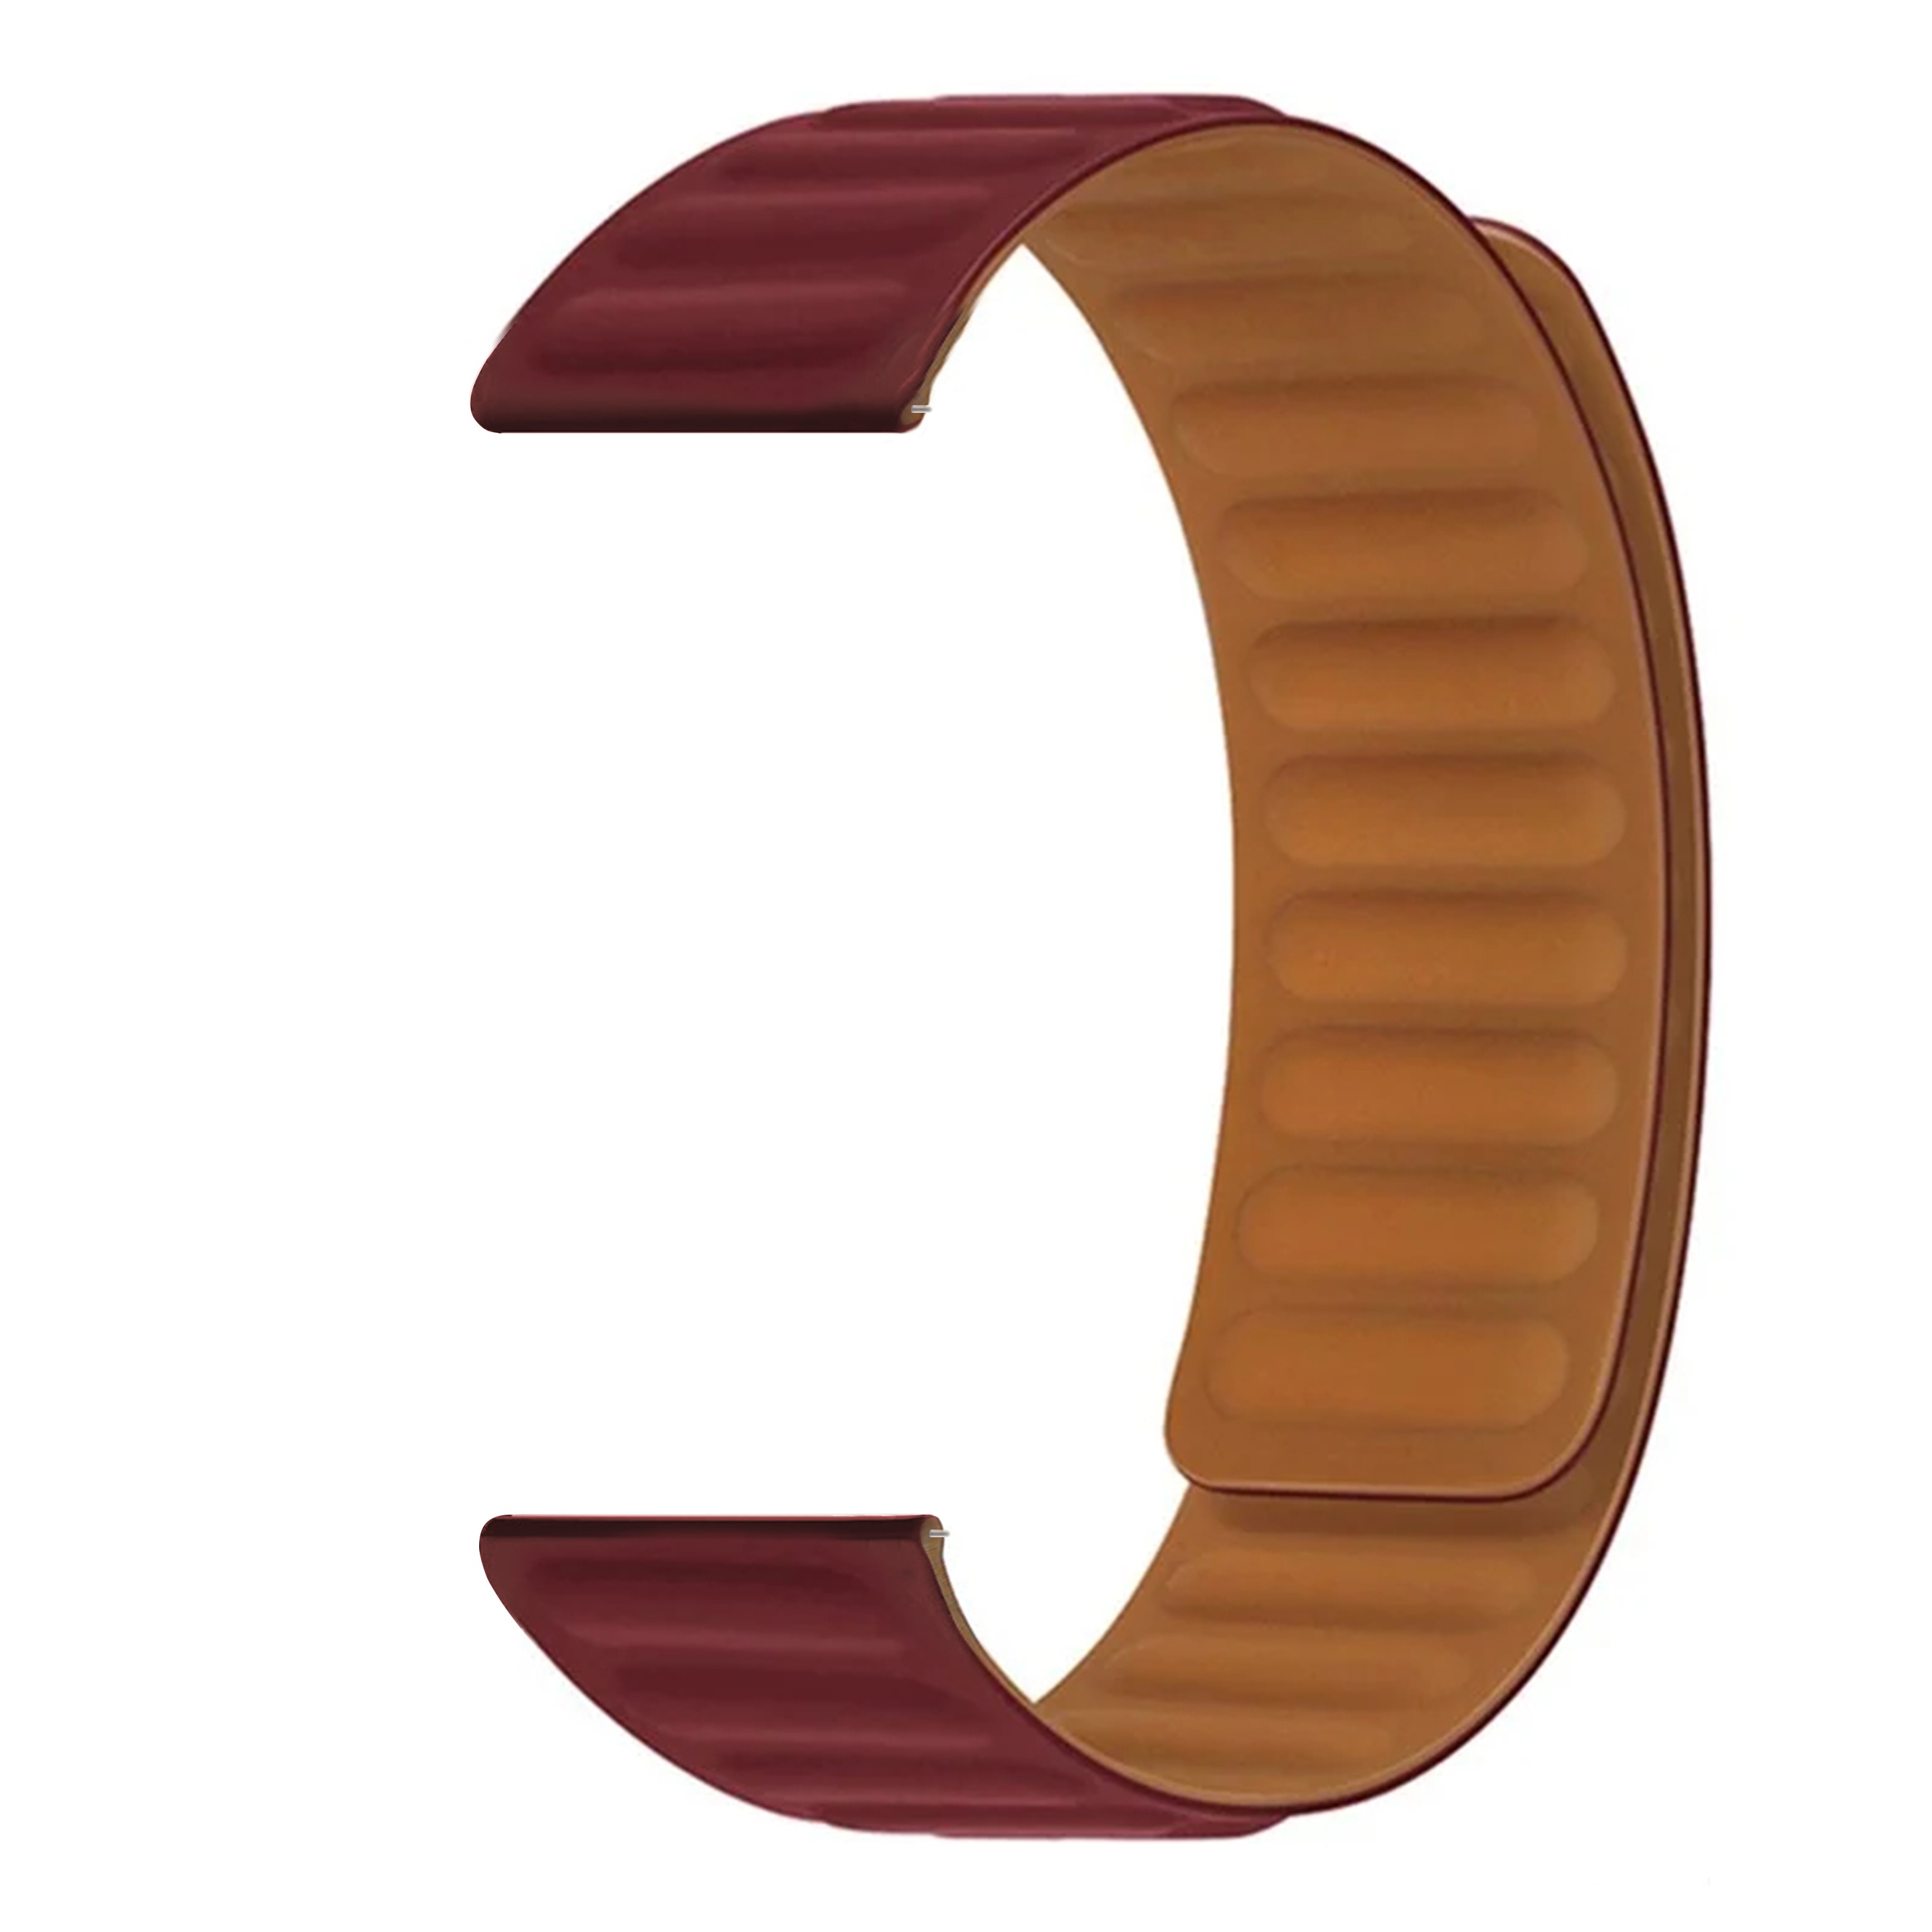 Hama Fit Watch 4910 Magnetische Armband aus Silikon burgund